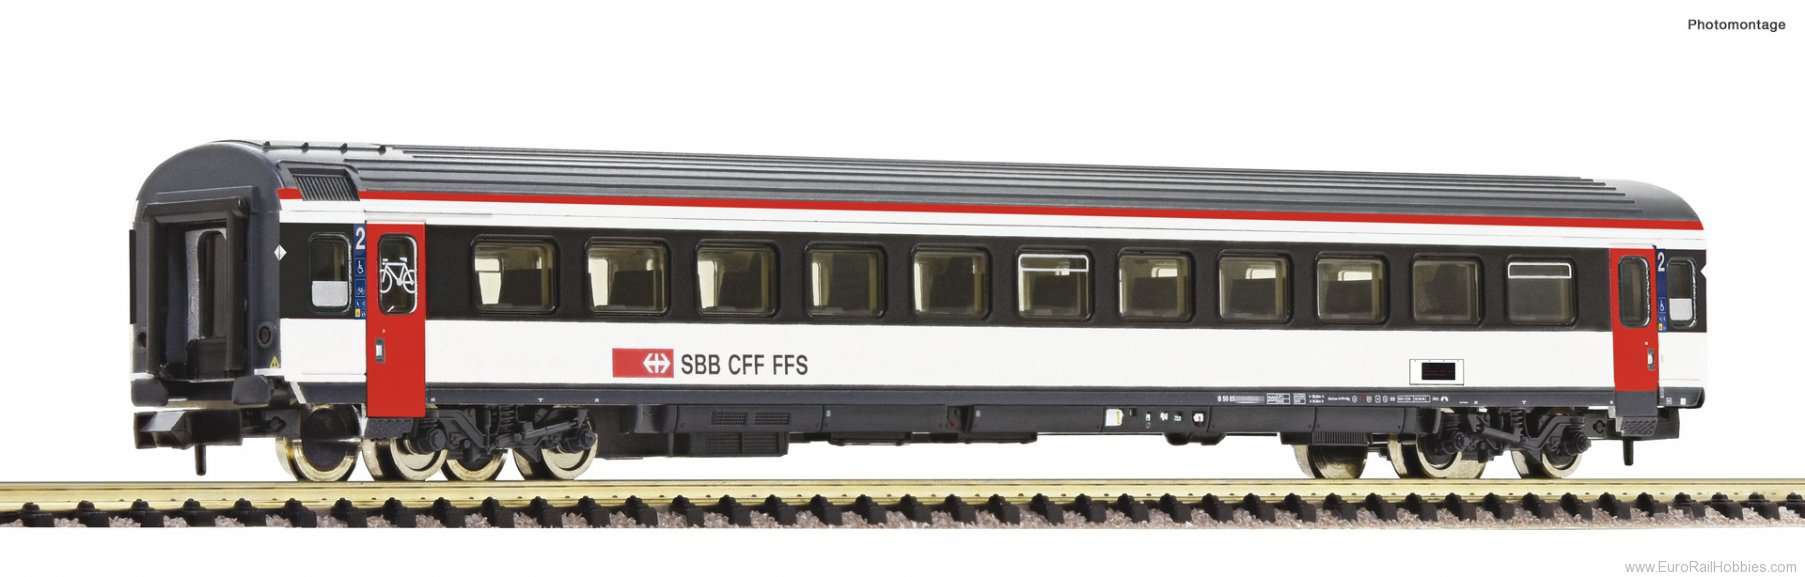 Fleischmann 6260017 2nd class passenger coach, SBB